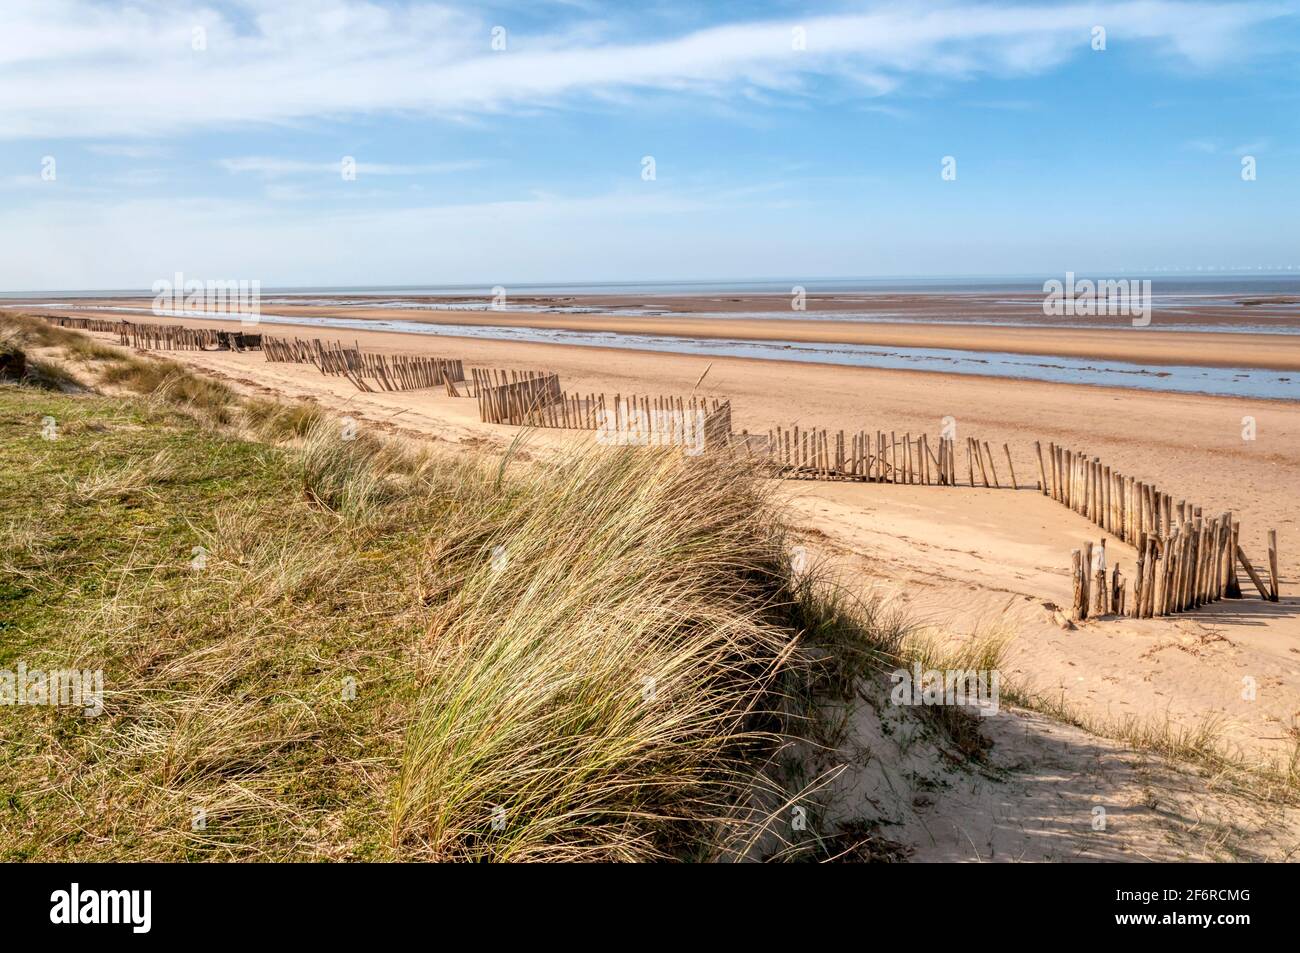 Une plage vide de Holme-Next-the-Sea, North Norfolk. Soutenu par des dunes couvertes d'herbe de marram, Ammophila arenaria. Banque D'Images